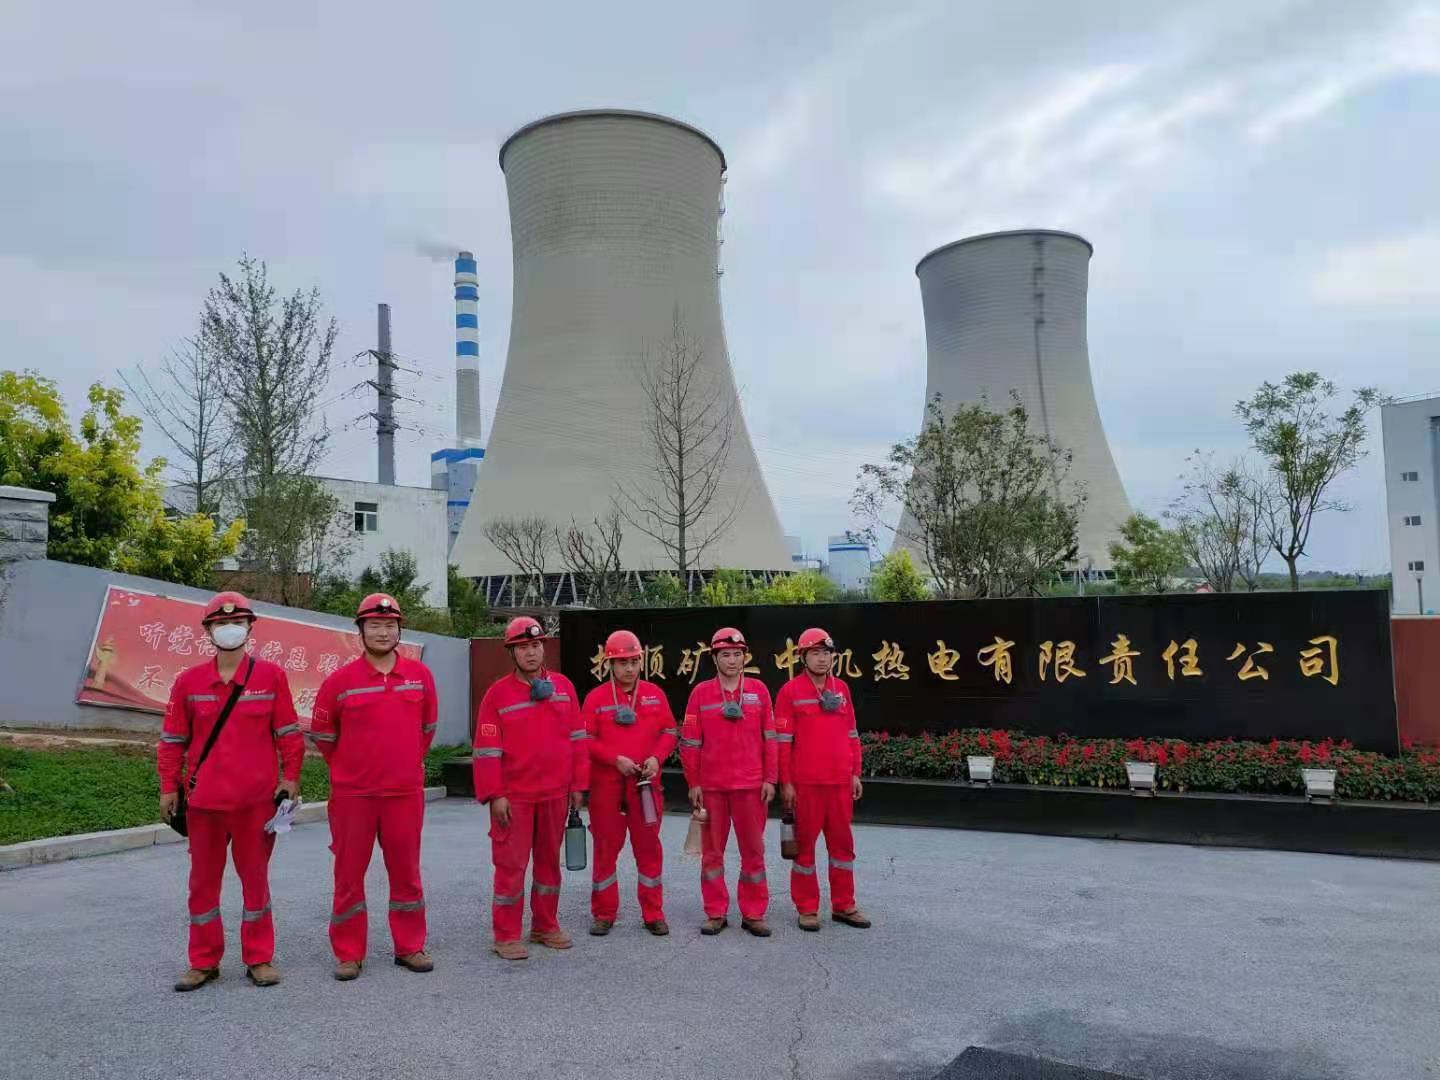 上海炳晟機電科技有限公司成功與撫順礦業中機熱電有限責任公司合作